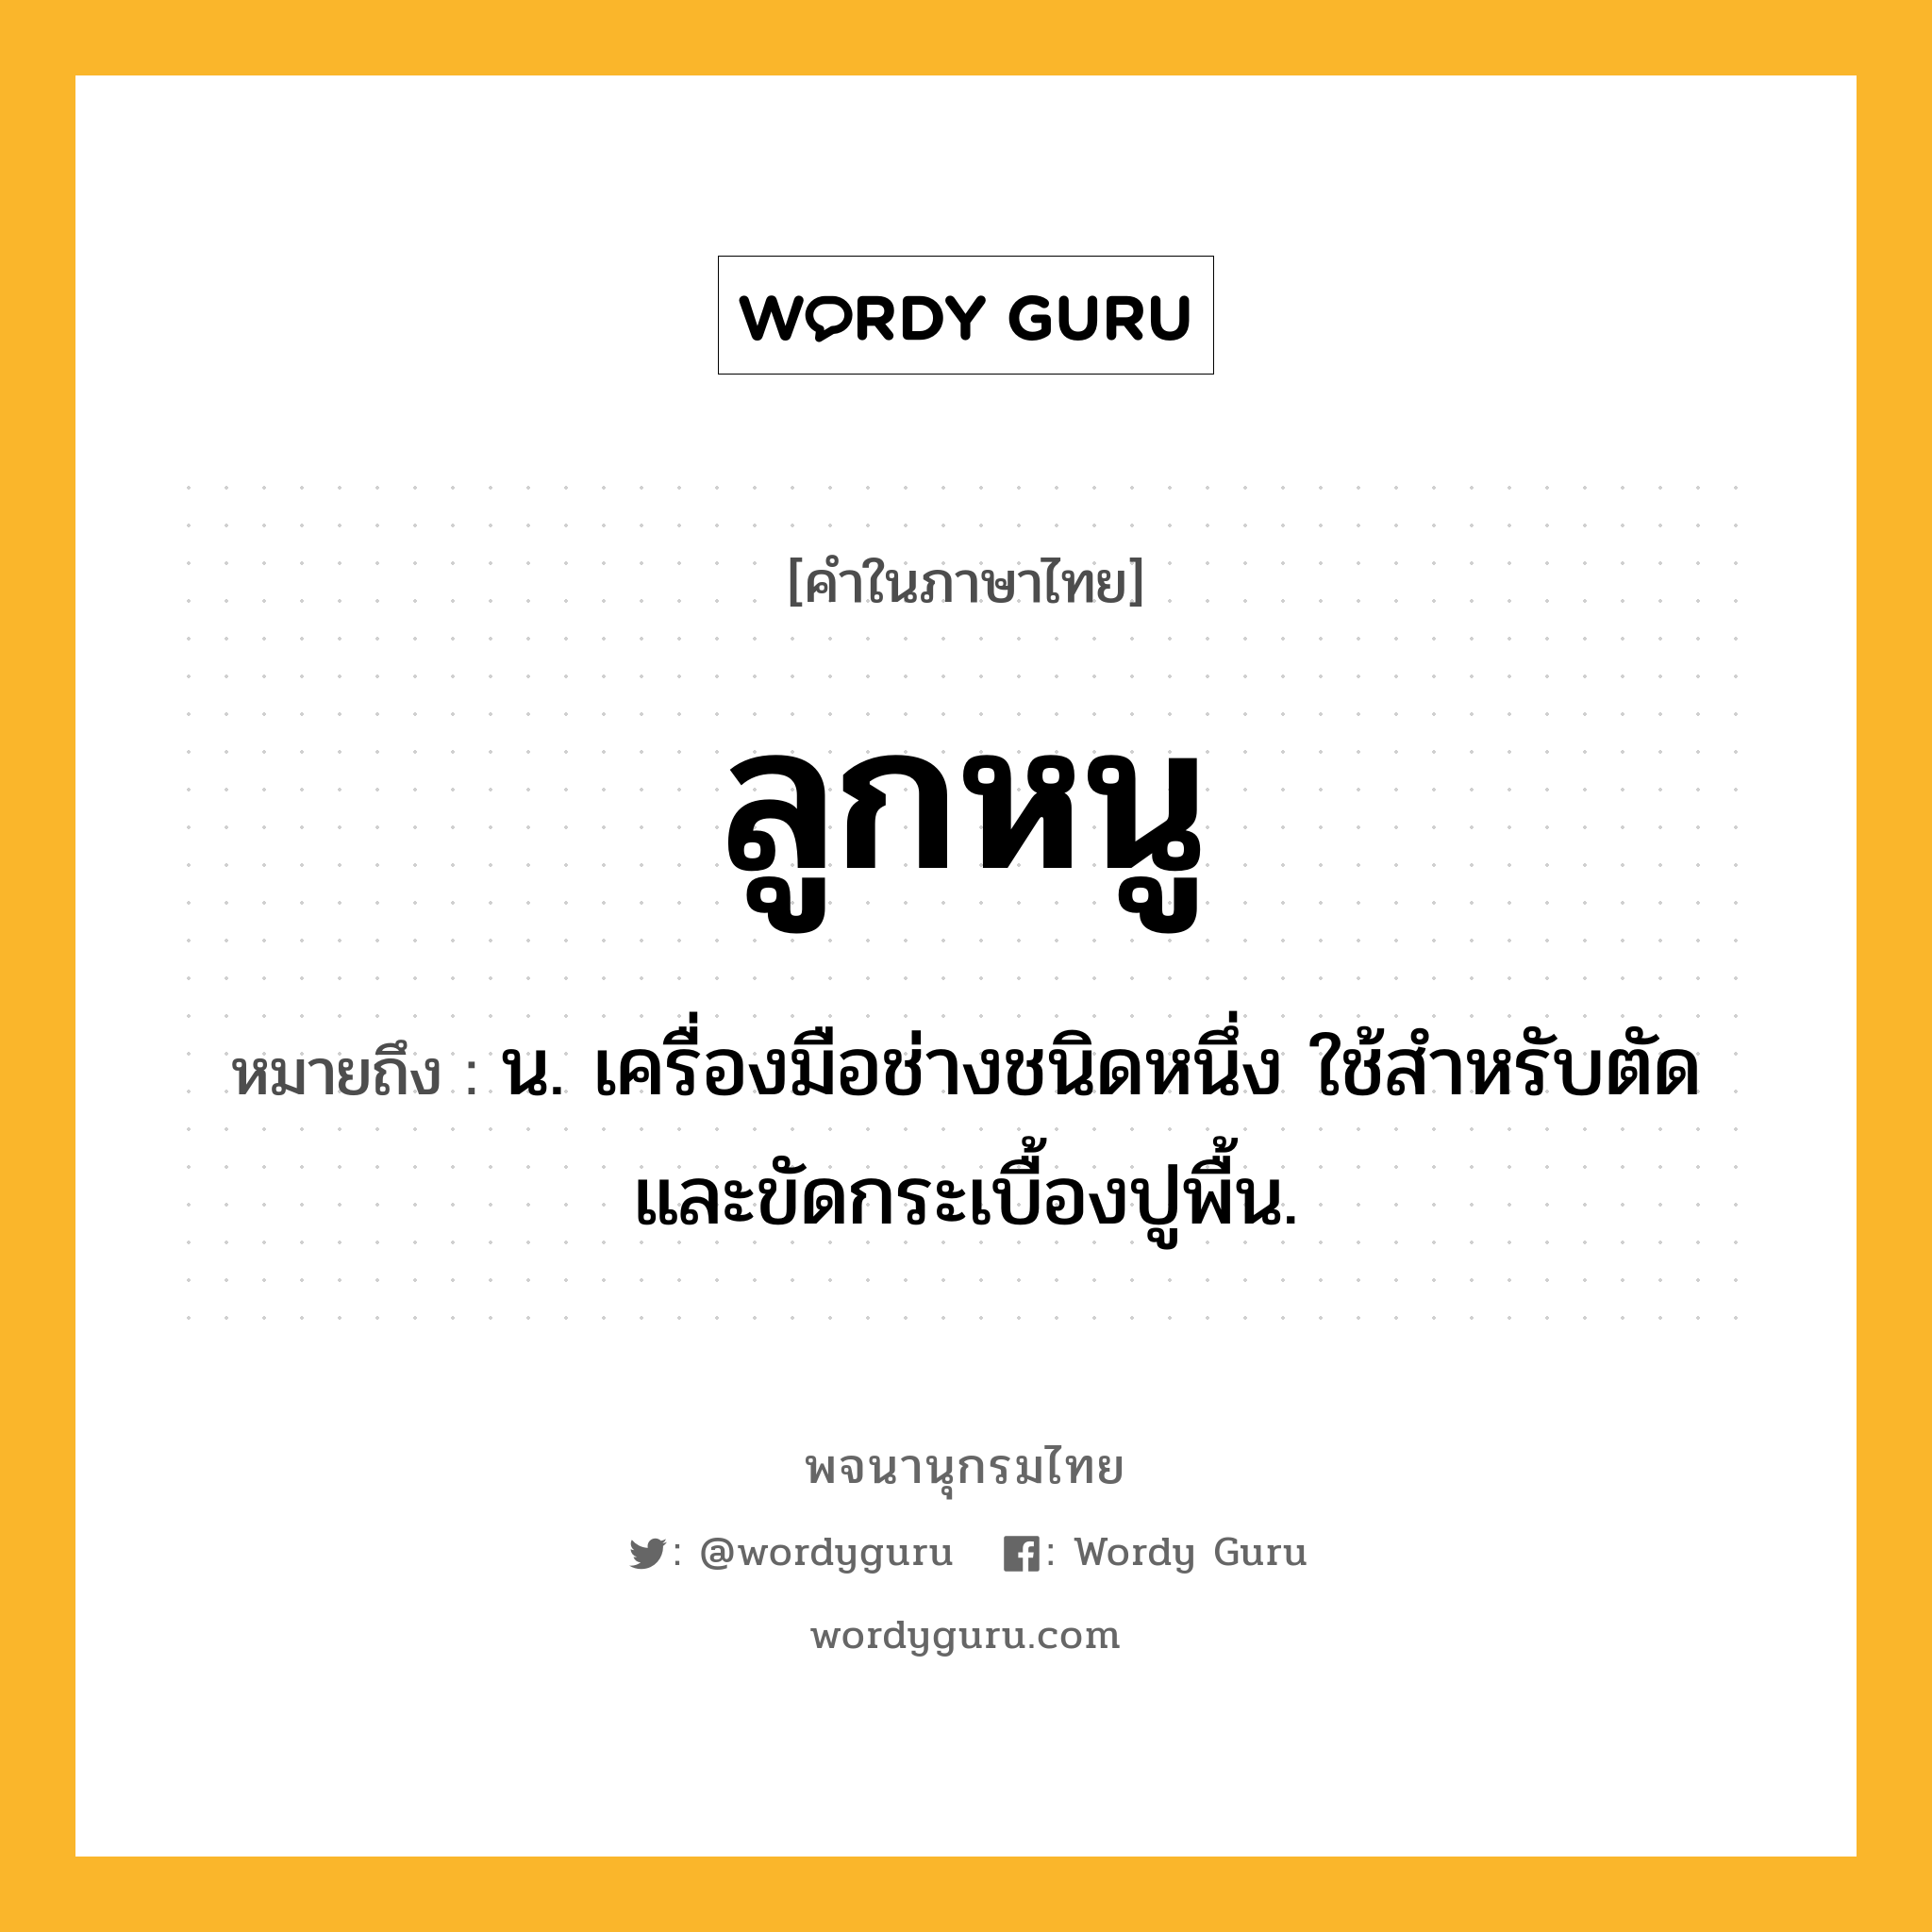 ลูกหนู หมายถึงอะไร?, คำในภาษาไทย ลูกหนู หมายถึง น. เครื่องมือช่างชนิดหนึ่ง ใช้สำหรับตัดและขัดกระเบื้องปูพื้น.